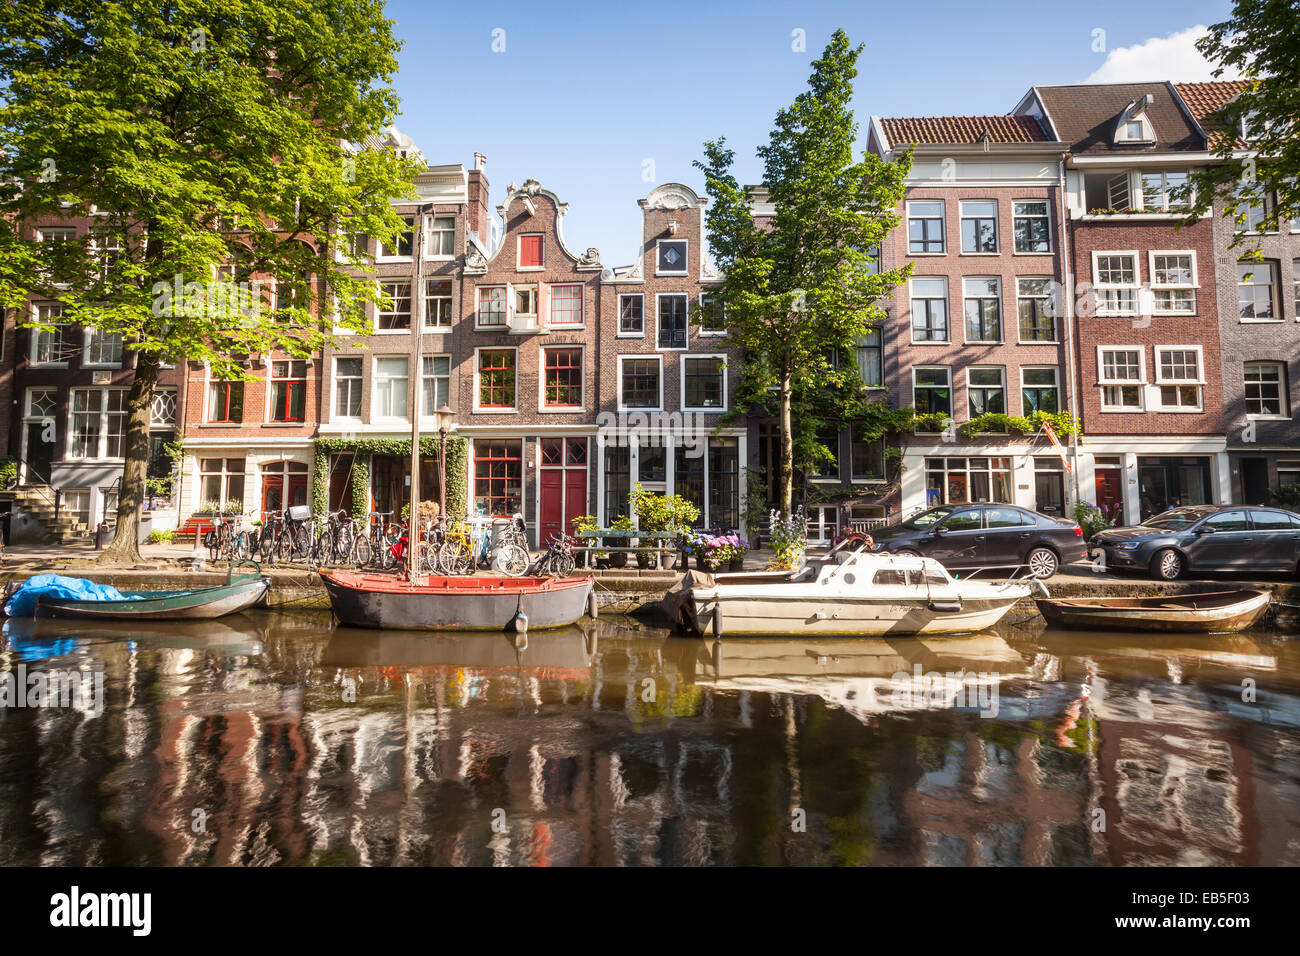 Ein Kanal in Amsterdam, Niederlande. Die Kanäle des Zentrum von Amsterdam wurden von der UNESCO ein World Heritage Siye ausgewiesen. Stockfoto